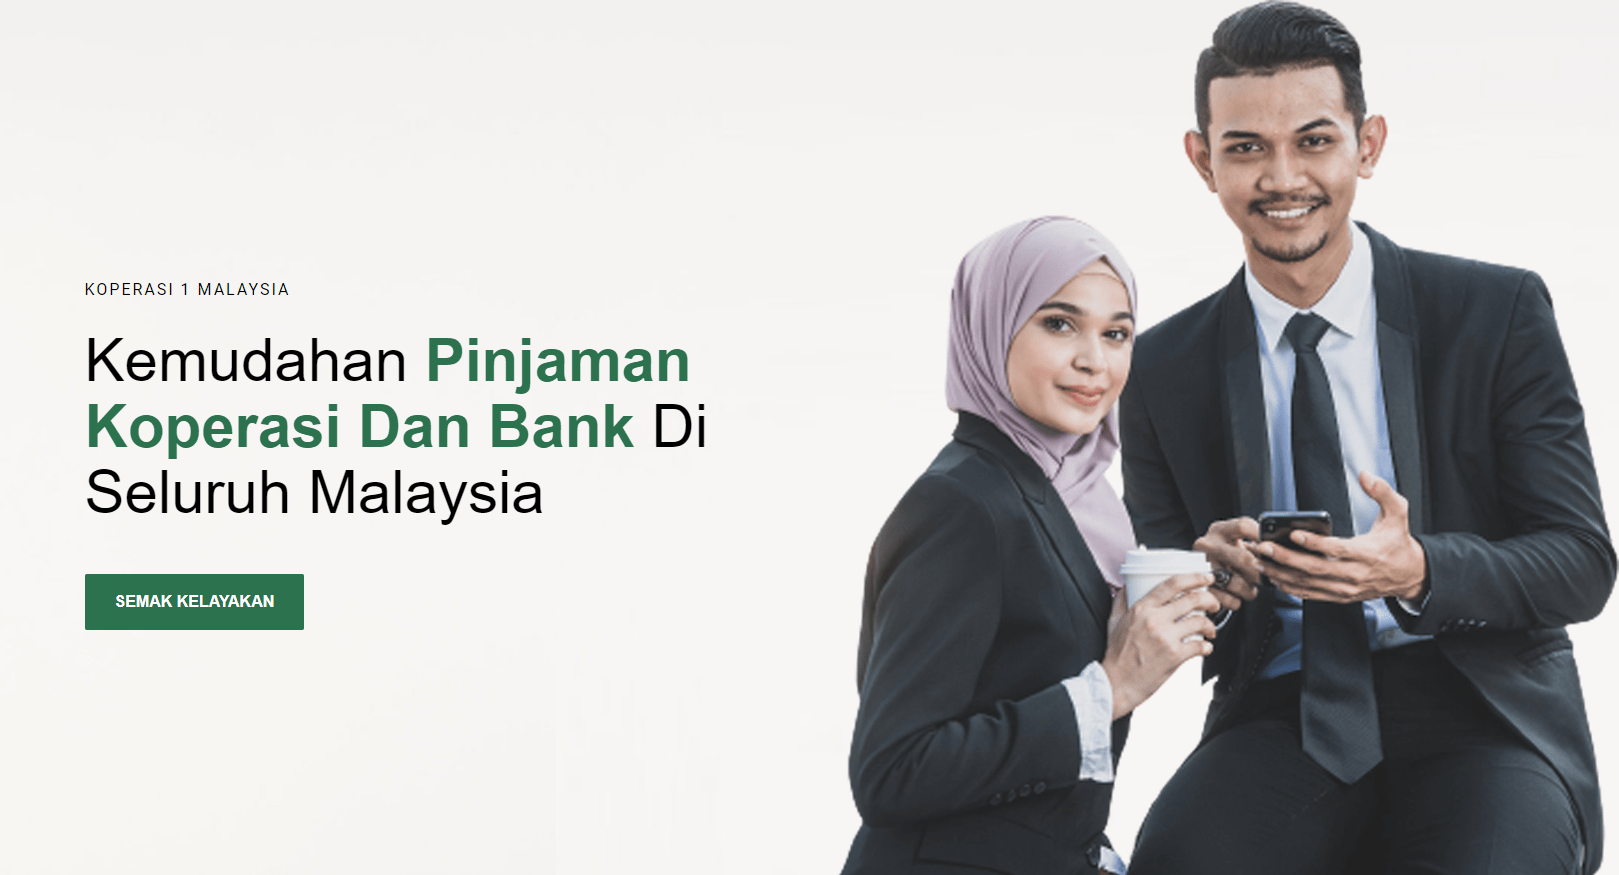 Pinjaman Koperasi Loan Kerajaan Malaysia Slider - Koperasi 1Malaysia - Kuala Lumpur Loan Islamic Malaysia-min